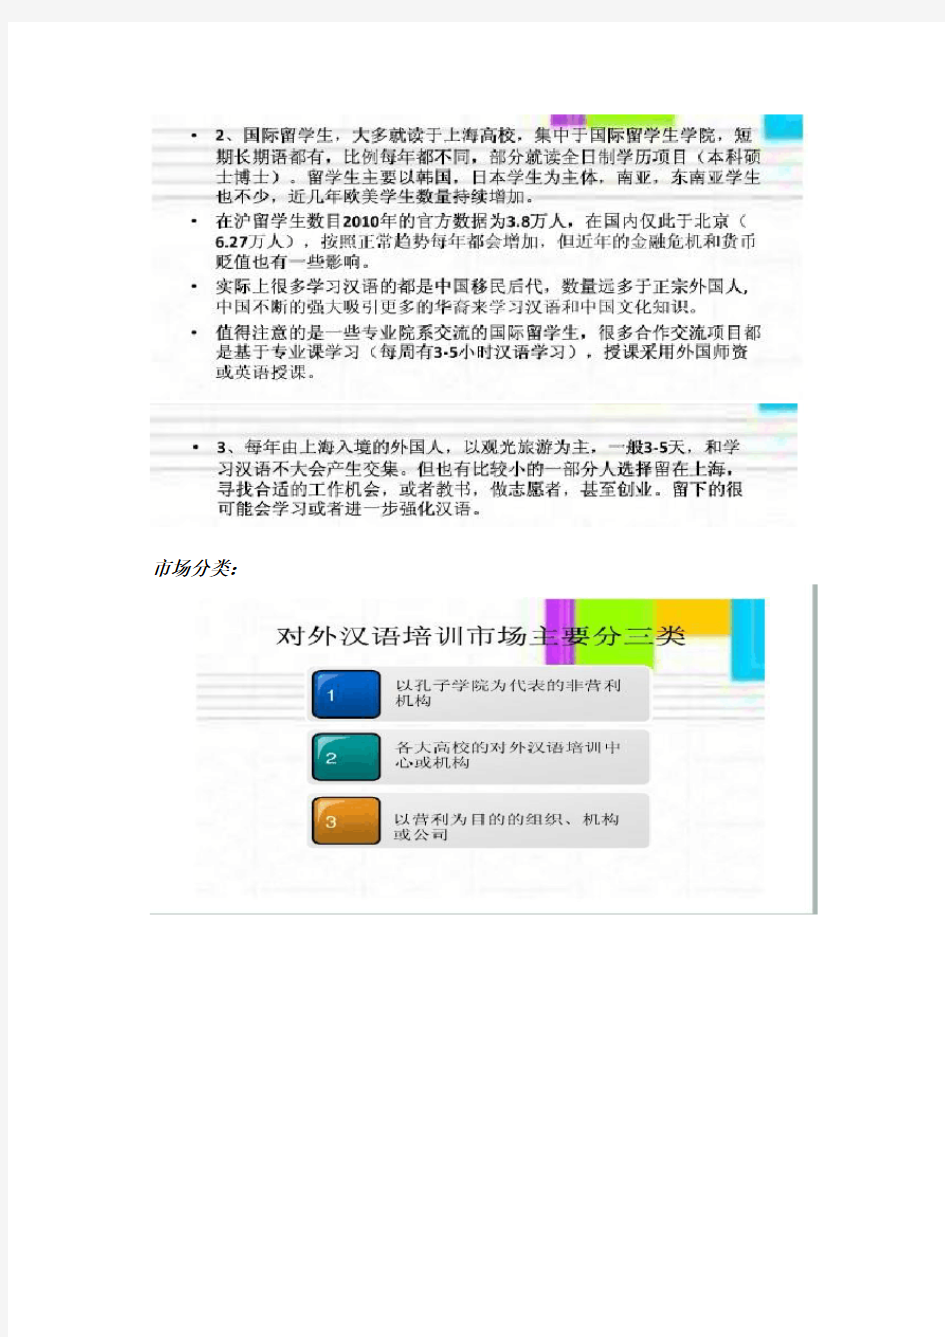 对外汉语教学市场分析报告(整合版)